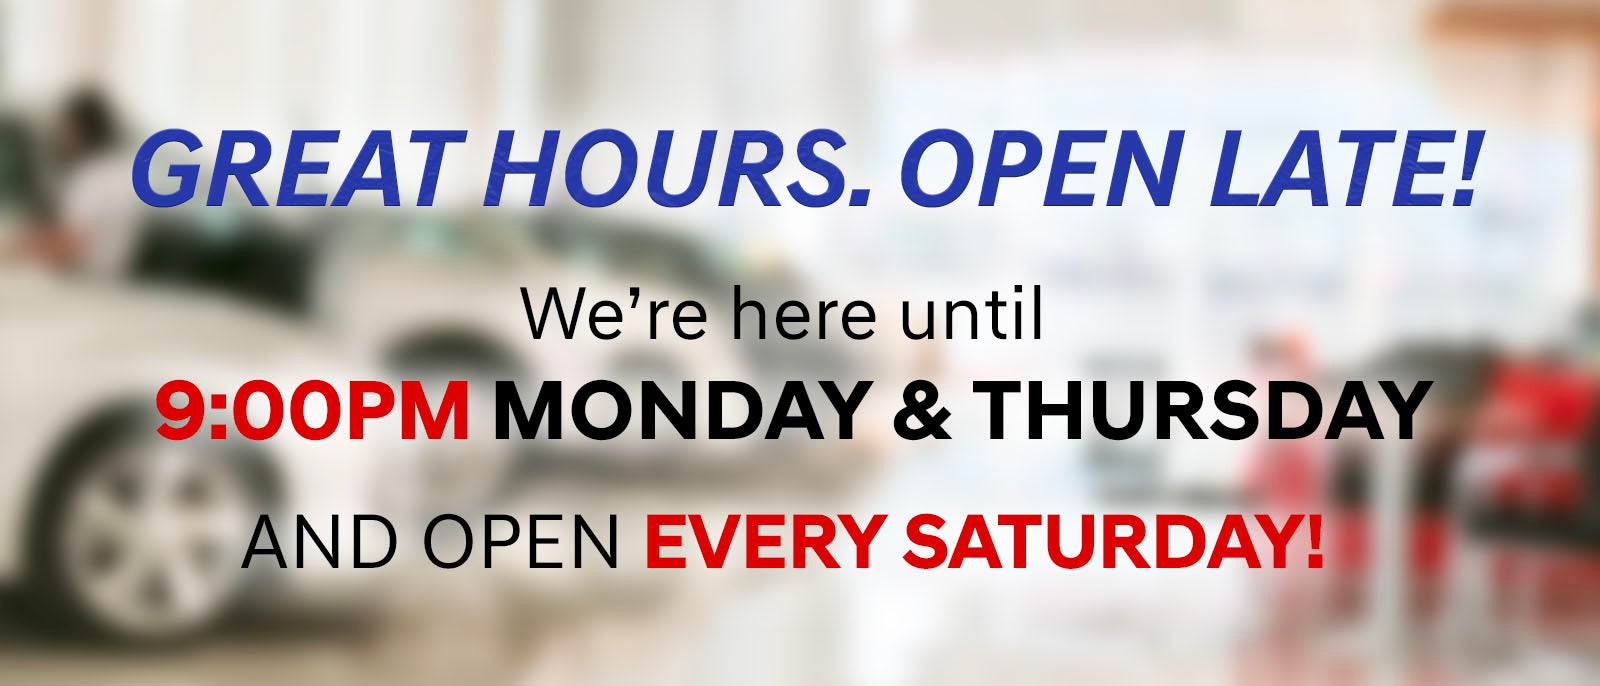 We're Open Late Mondays & Thursdays. We're open Saturdays